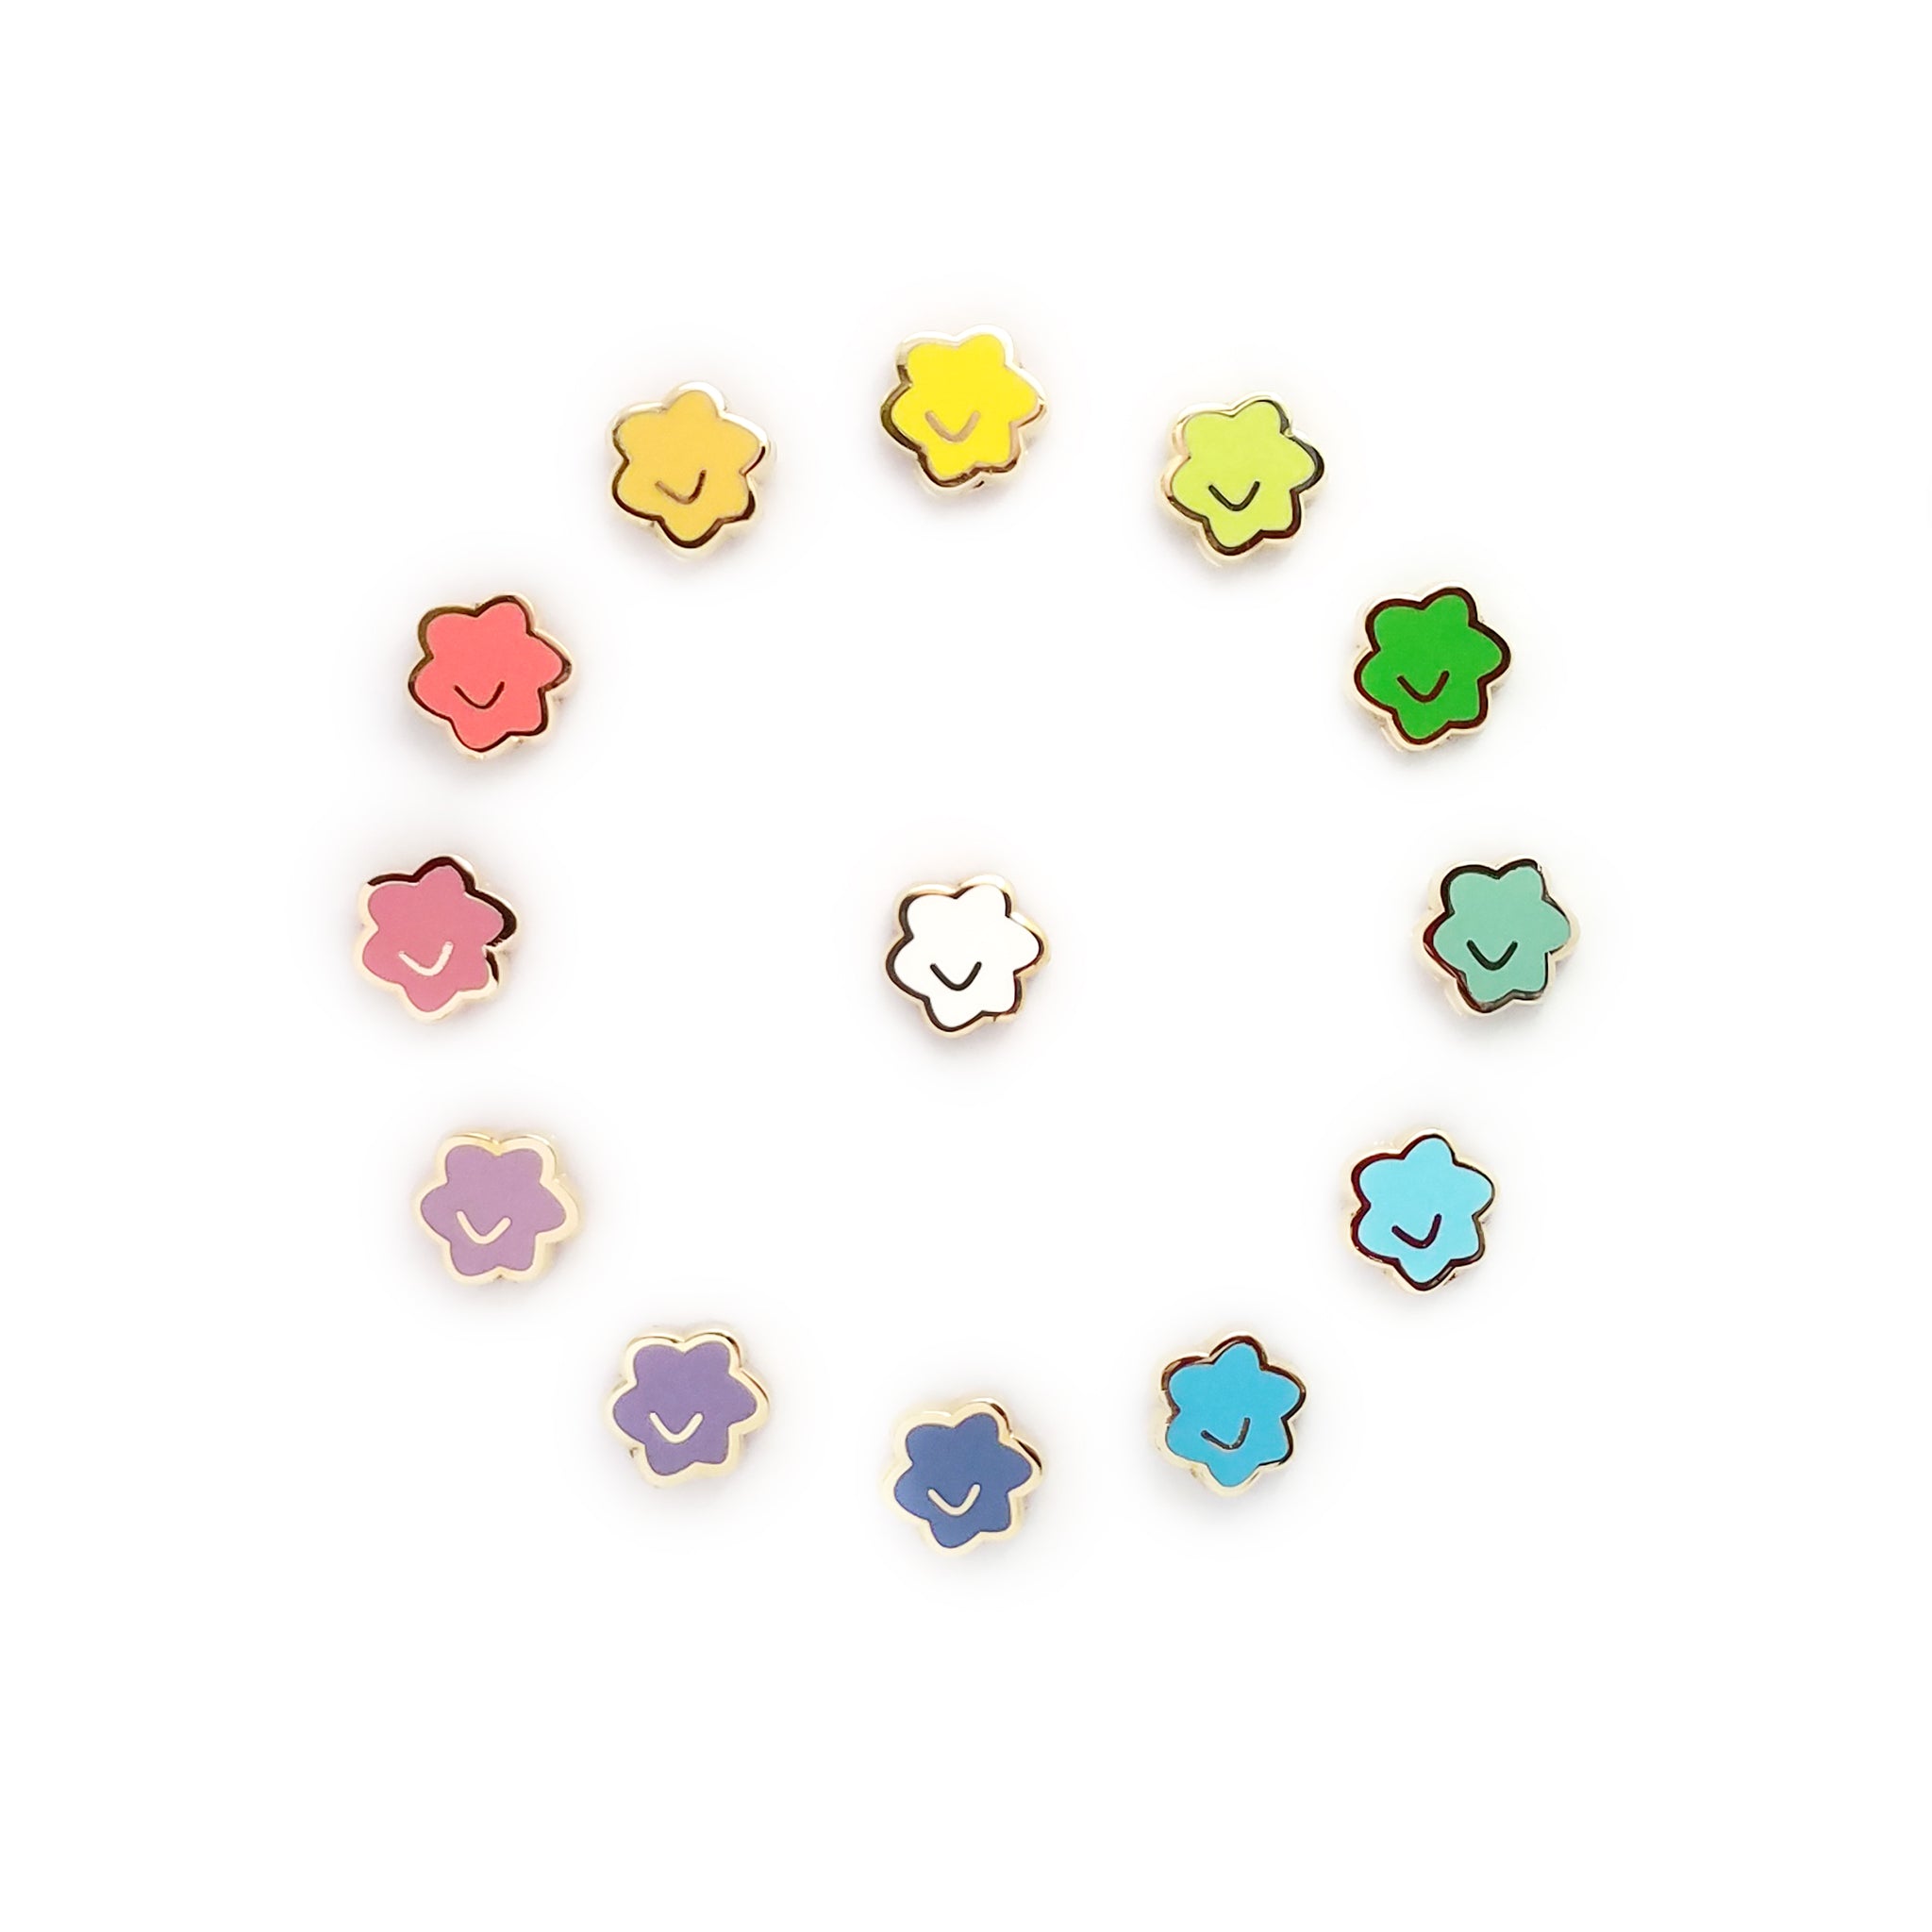 Star Paws Mini Enamel Pins [Set A - Red, Orange, Yellow, Green]